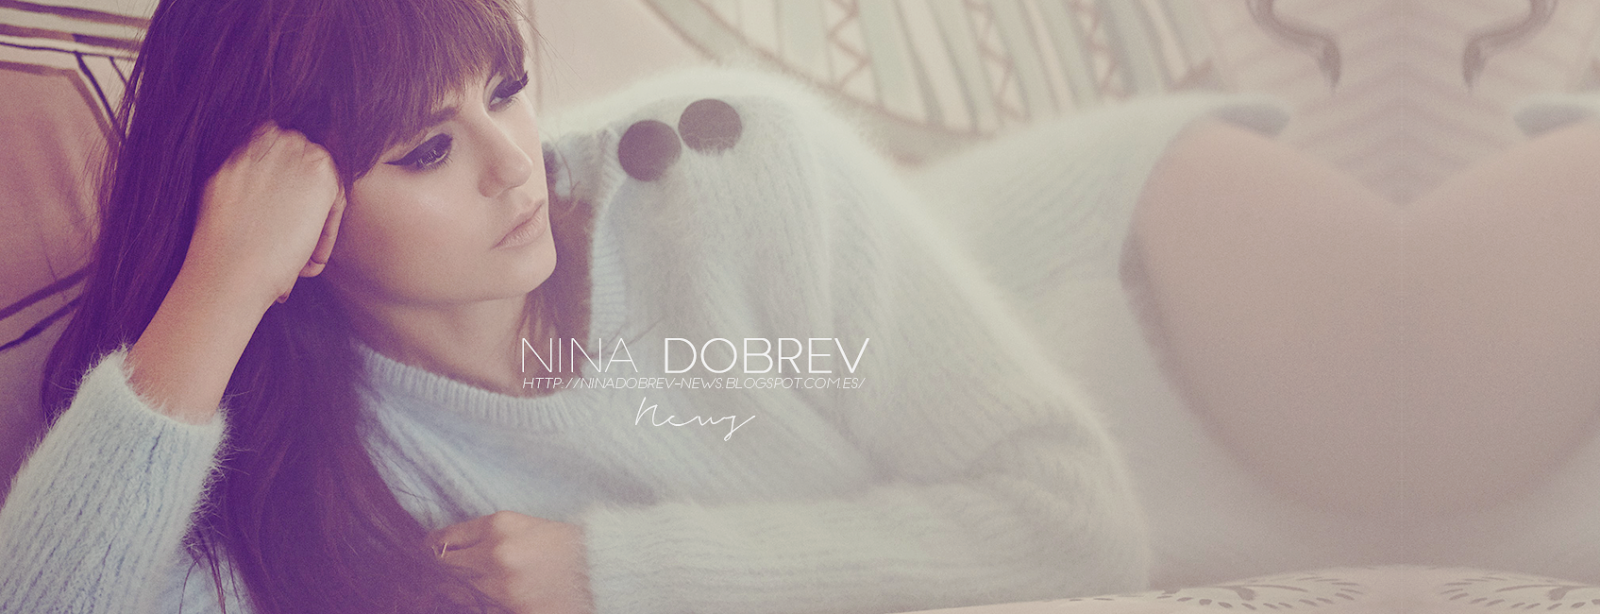 Nina Dobrev News